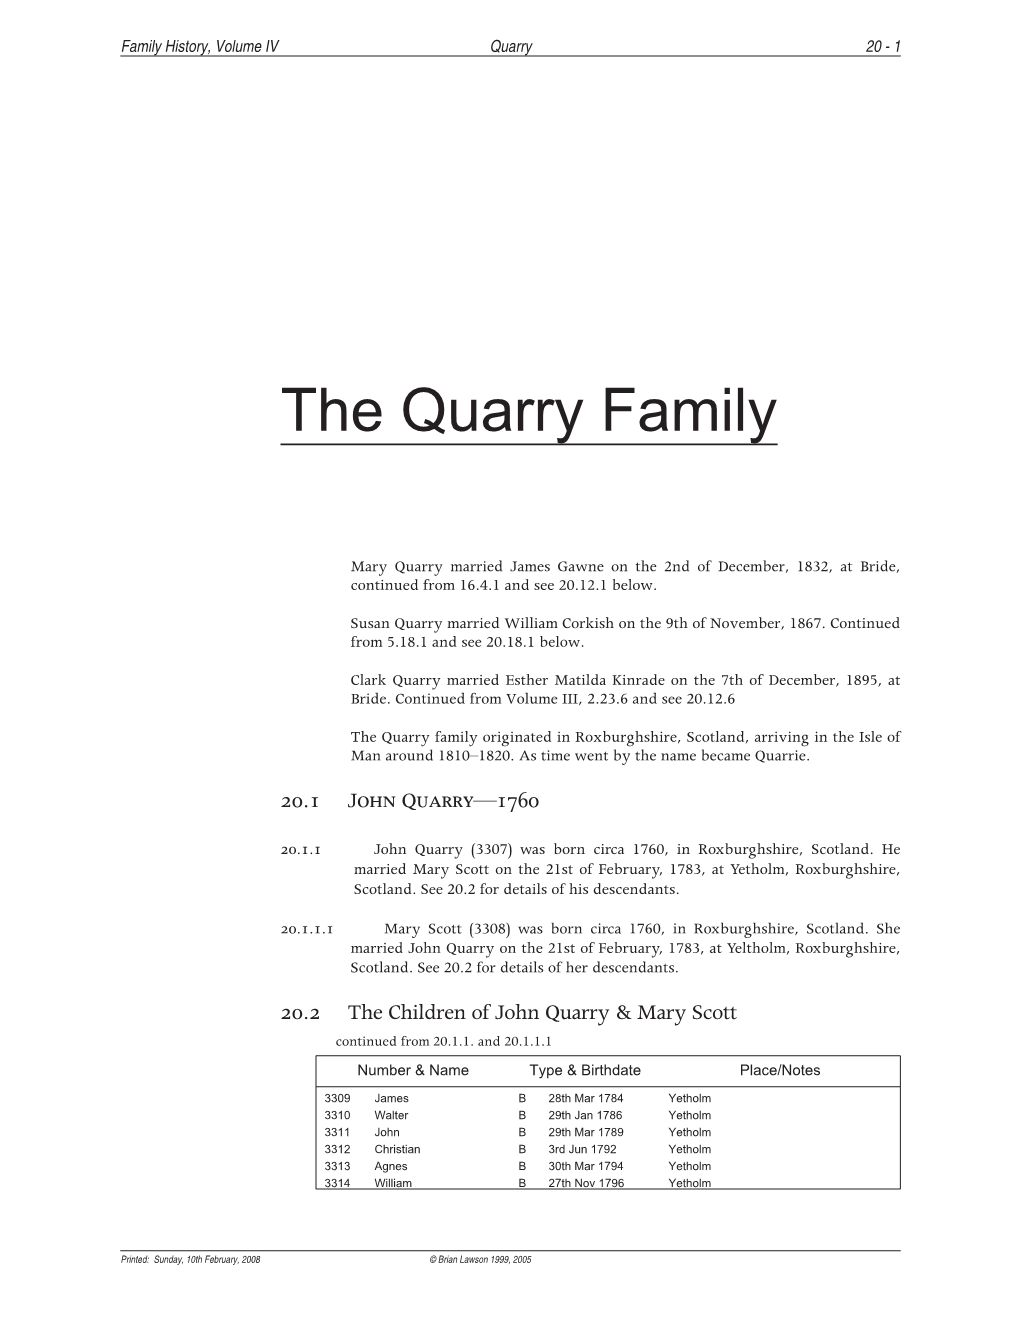 The Quarry Family